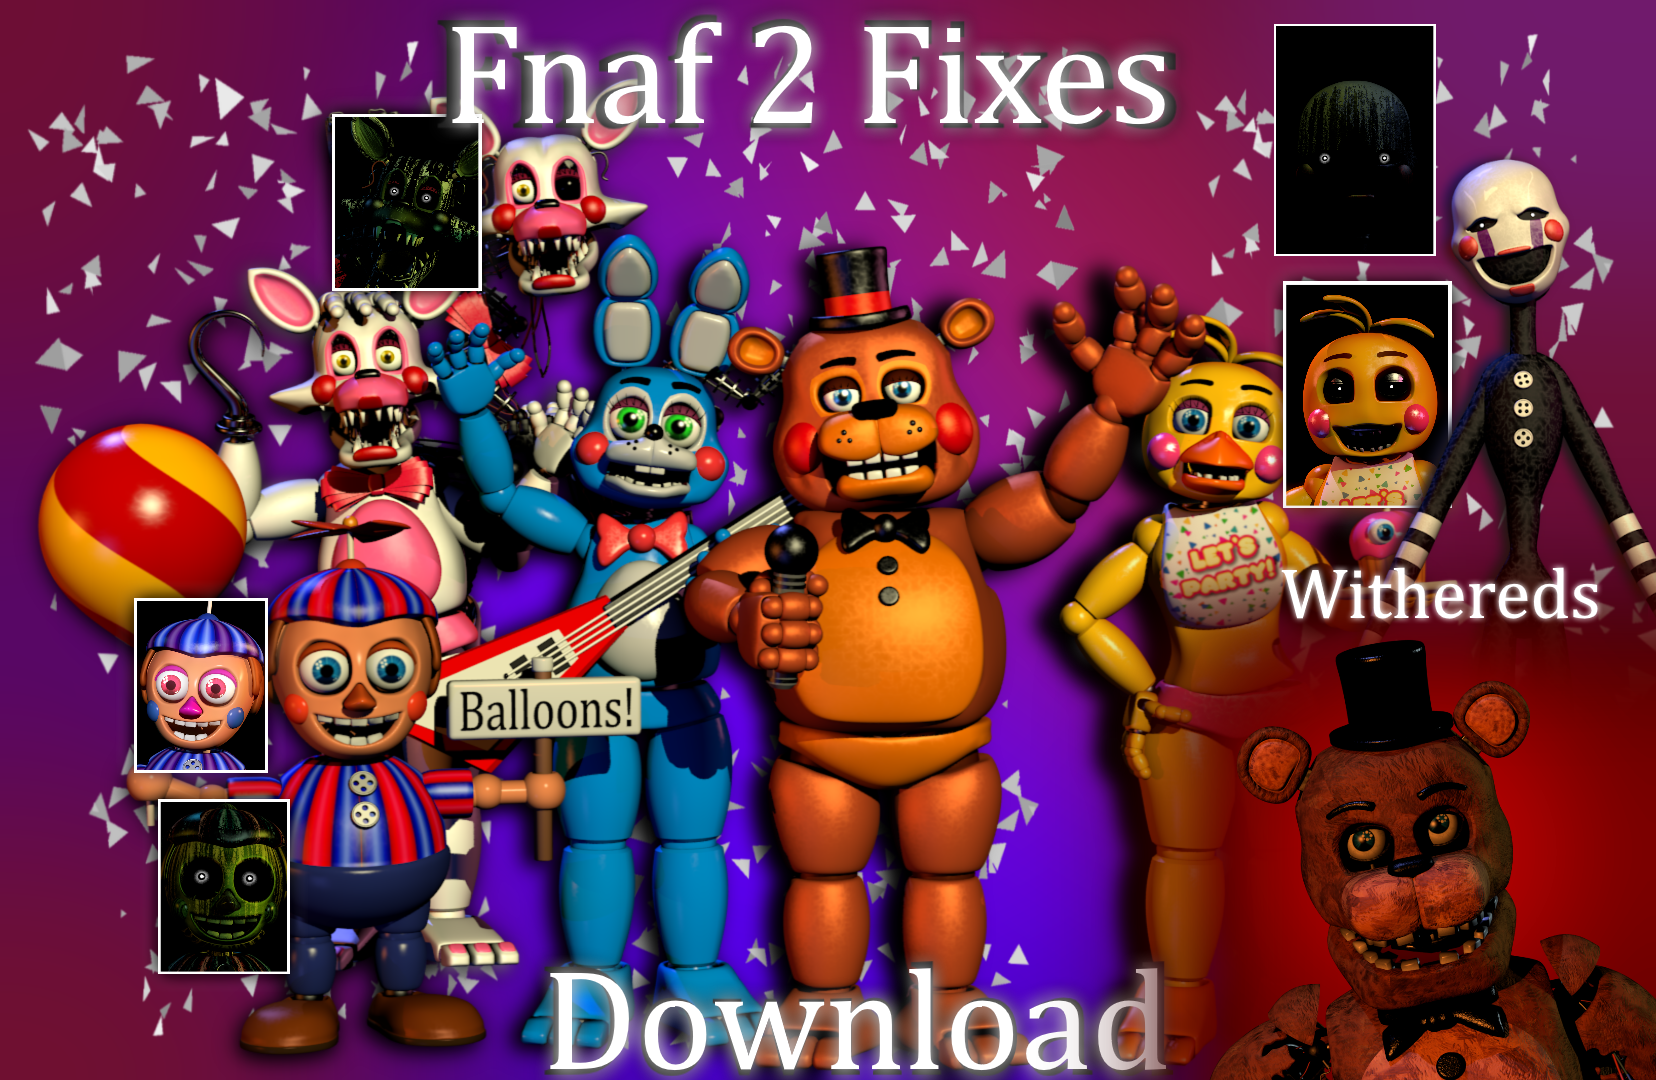 Fnaf World 2 Pack - C4d download  Five Nights at Freddys PT/BR Amino